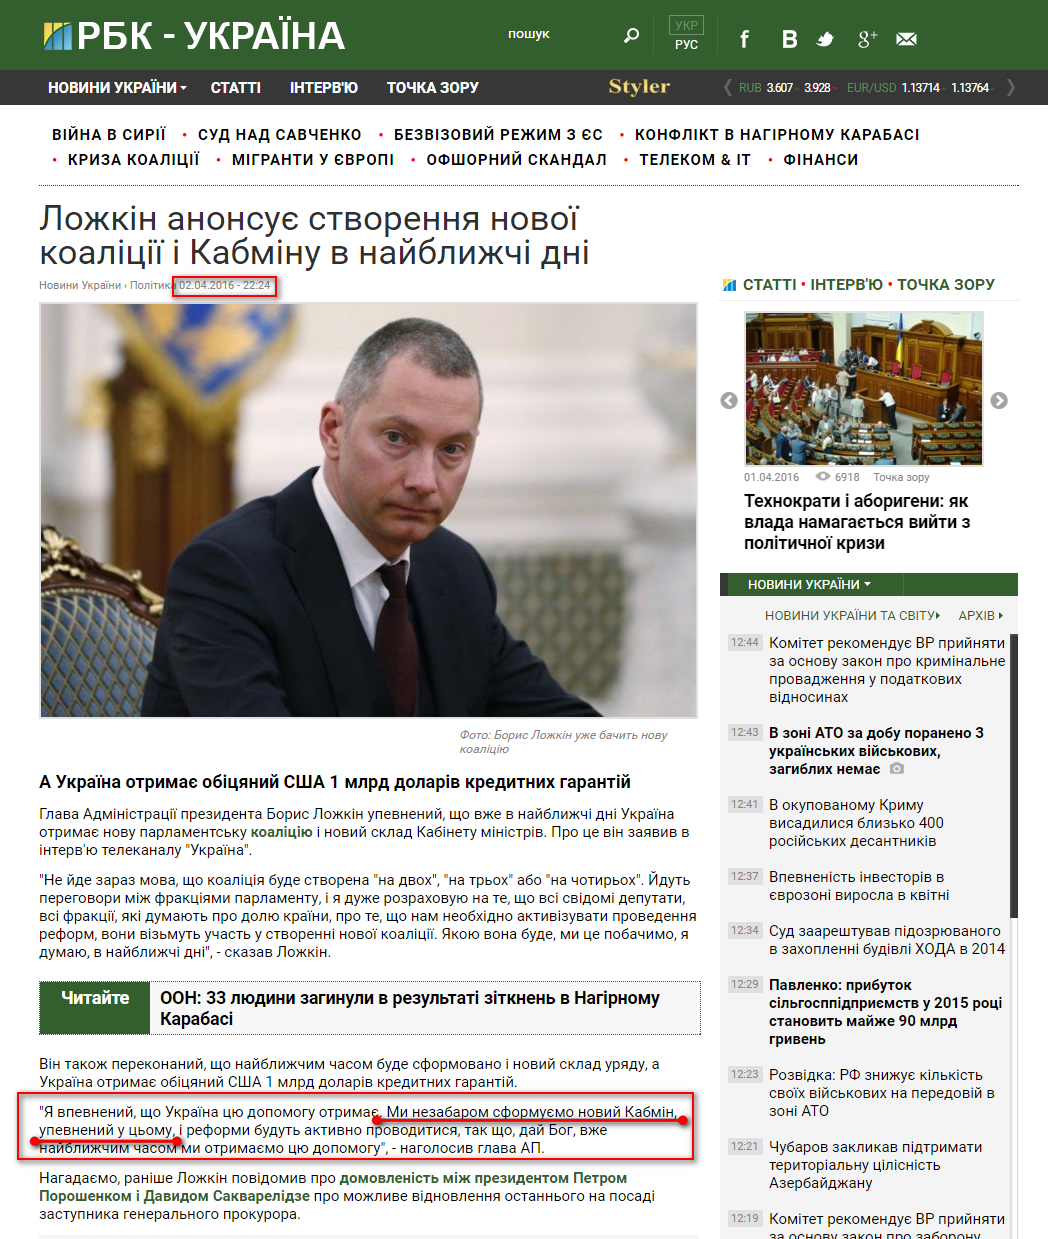 https://www.rbc.ua/ukr/news/lozhkin-anonsiruet-sozdanie-novoy-koalitsii-1459624956.html